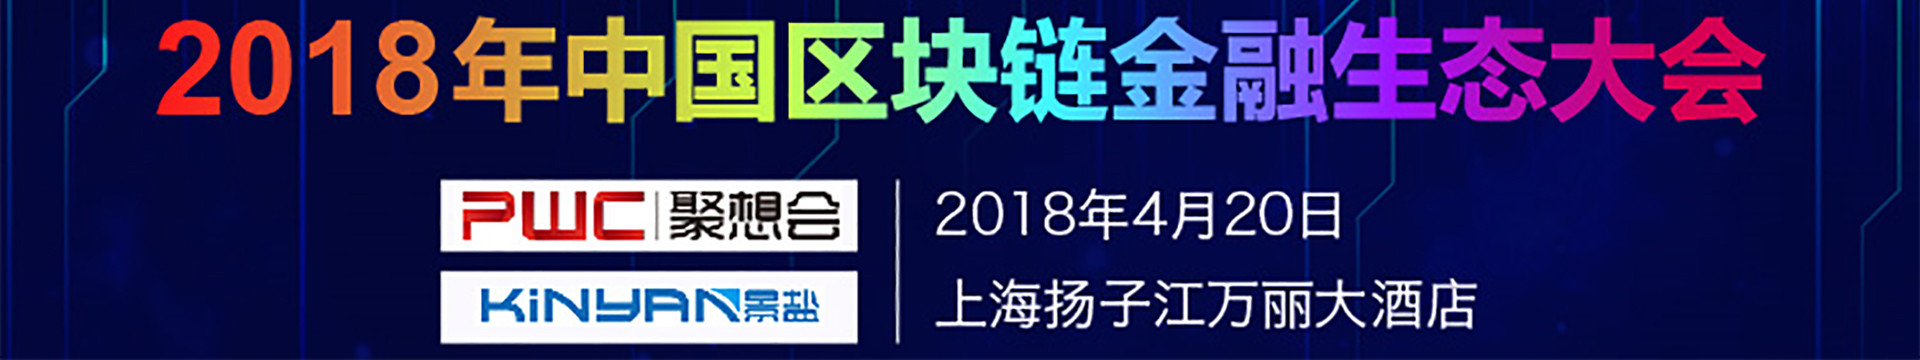 2018年中国区块链金融生态大会